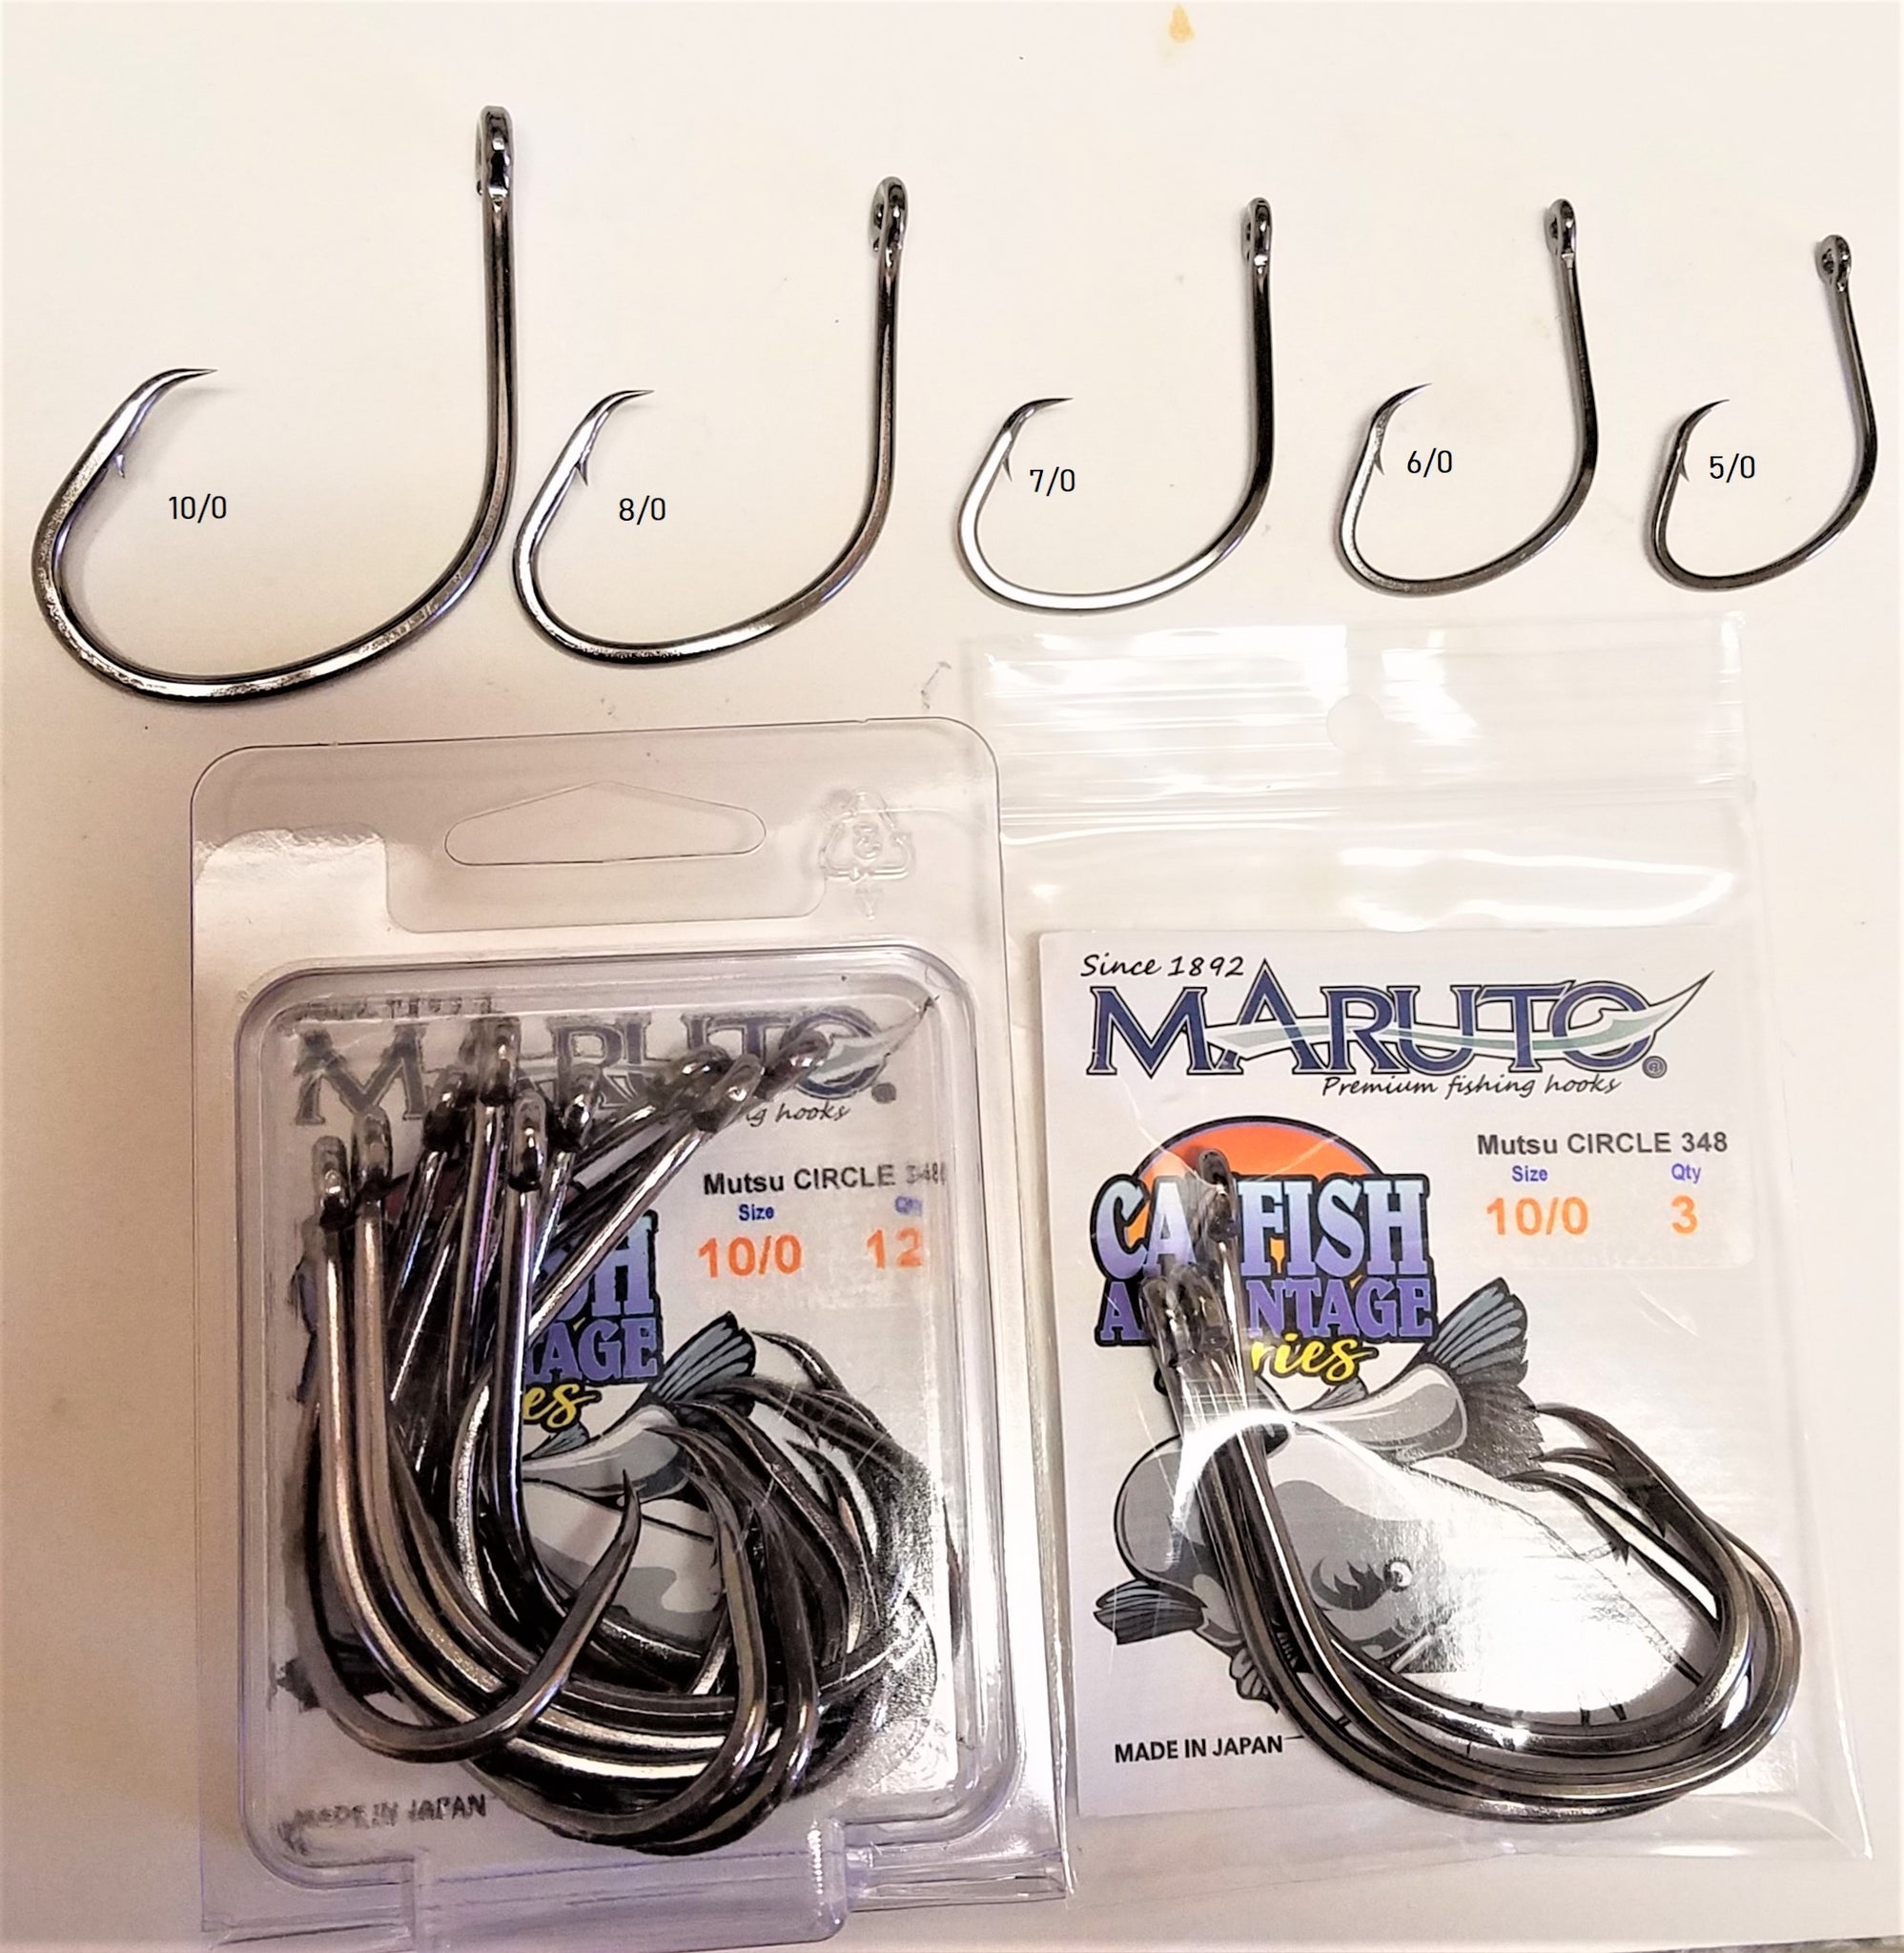 Catfish Advantage Maruto Circle Hooks – Angler Innovations